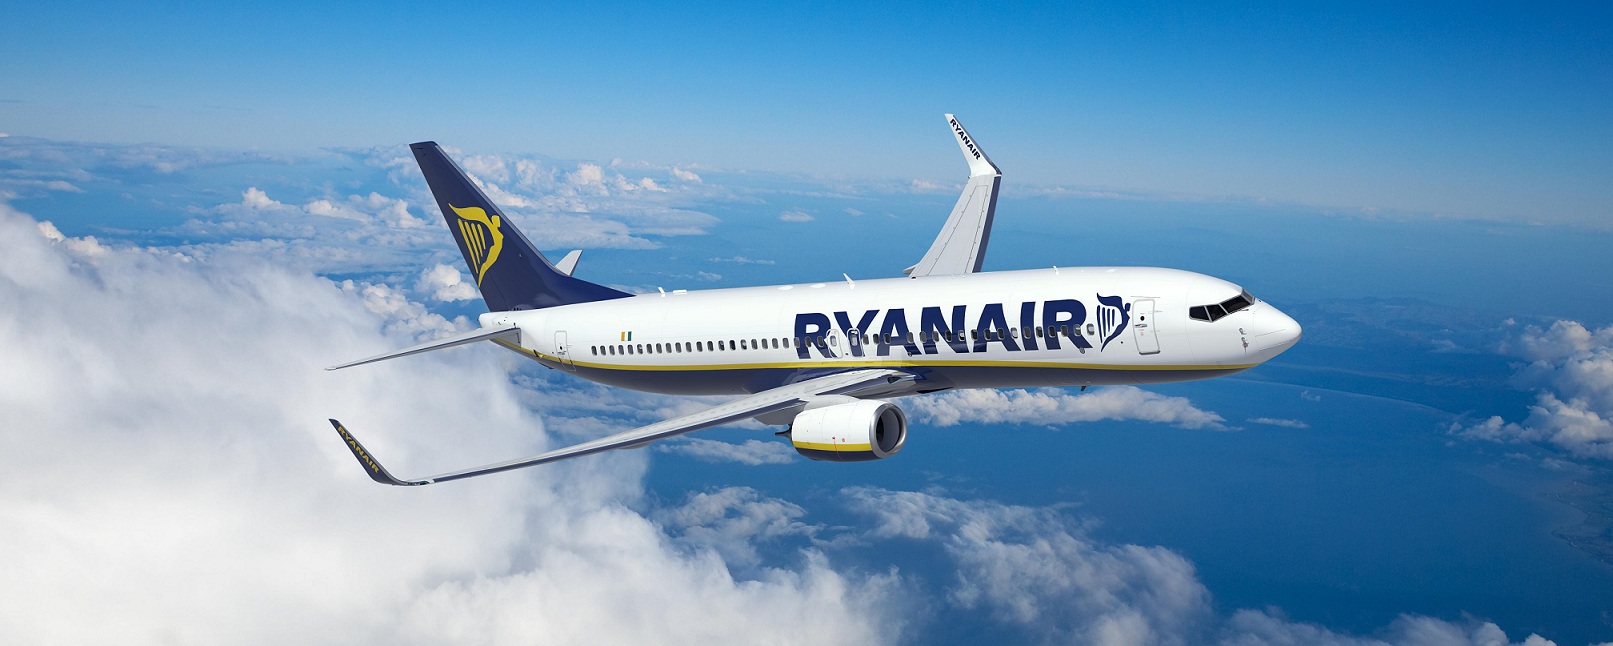 Ryanair продает дешевые билеты пассажирам отмененных рейсов из Одессы